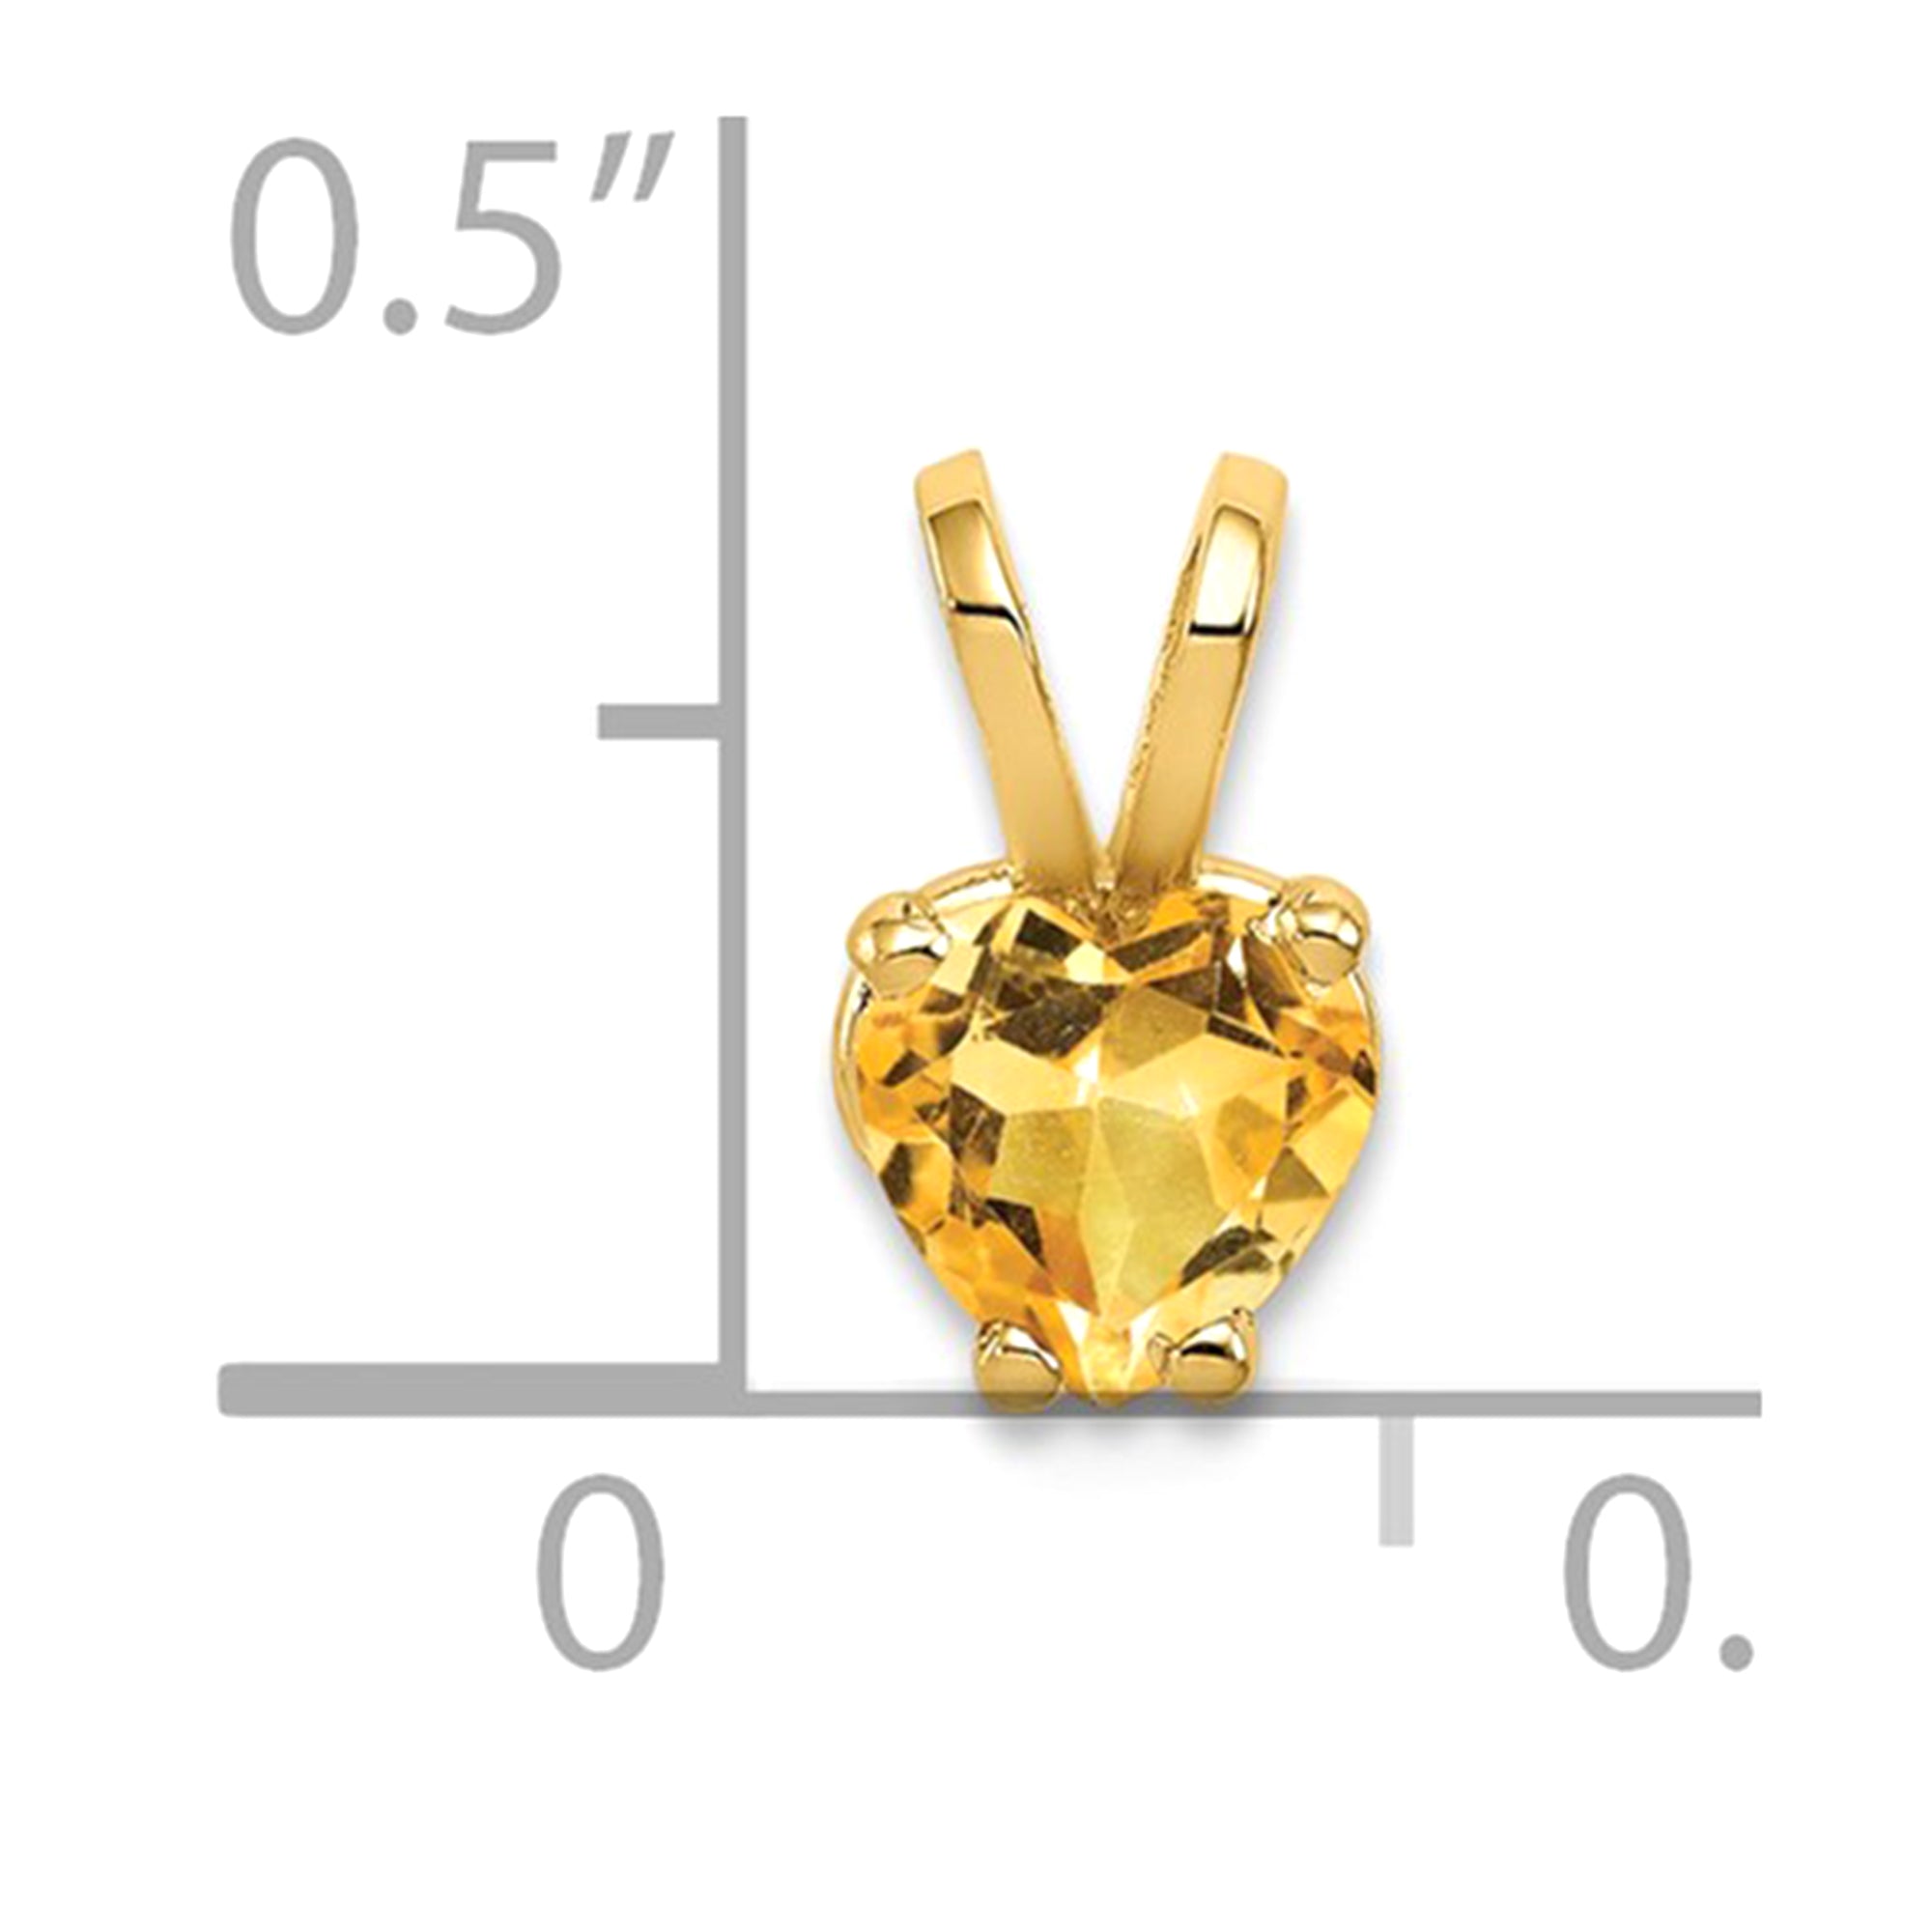 Ægte 14 k gul guld hjerte fødselssten ædelsten vedhæng Charm fine designer smykker til mænd og kvinder